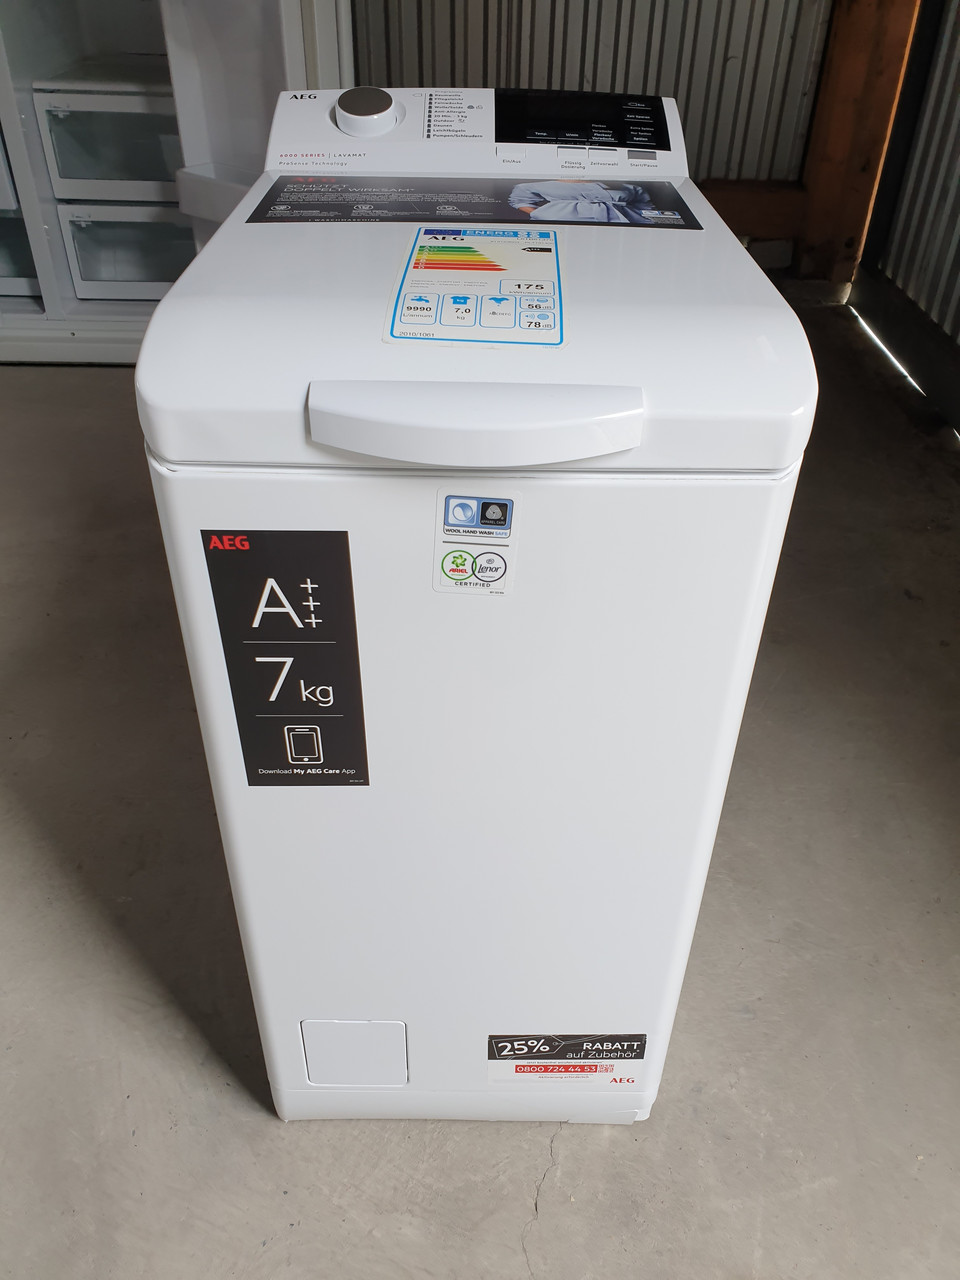 Пральна машина AEG lavamat 6000 Series ProSense 7 KG / 2019-го року випуску  / L6TB61370, ціна 16499 грн — Prom.ua (ID#1406100472)